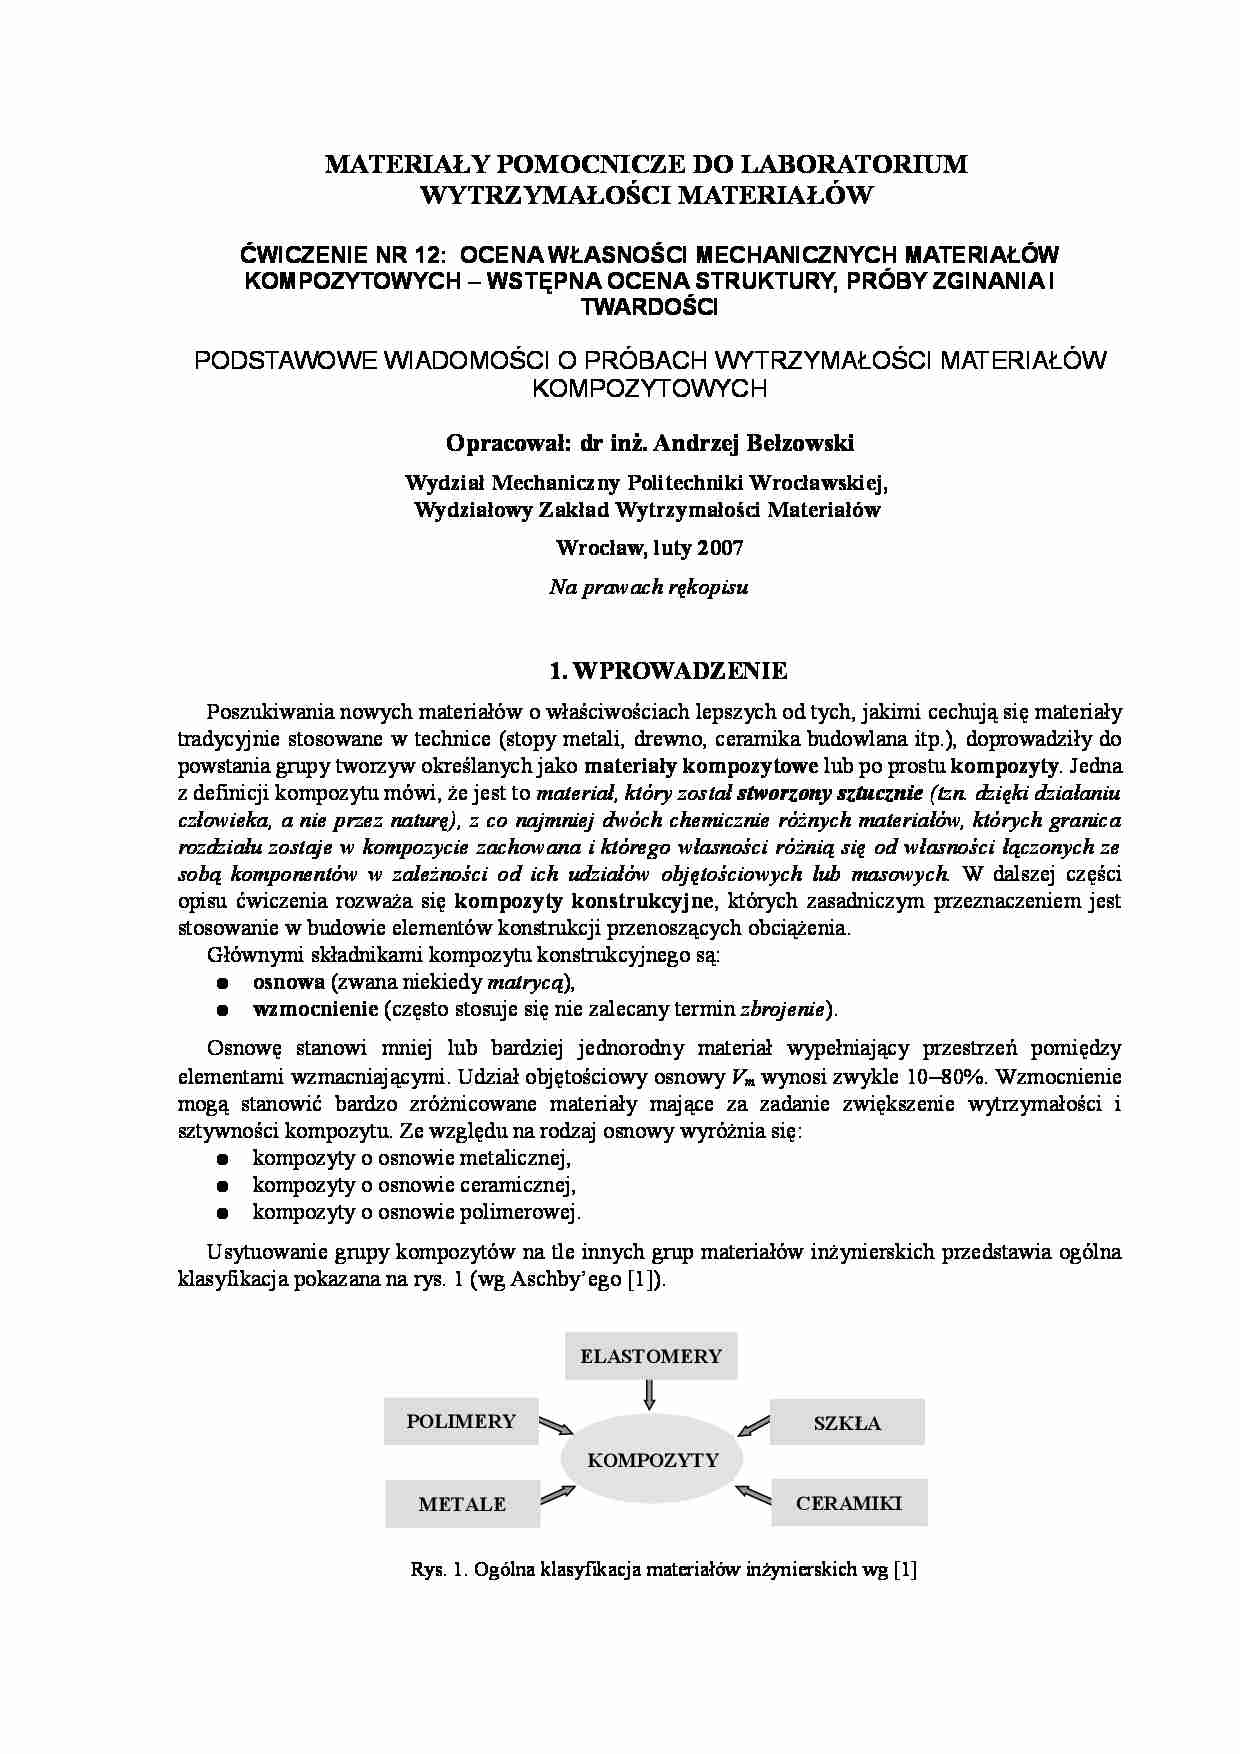 OCena własności mechanicznej materiałów - laboratorium - strona 1